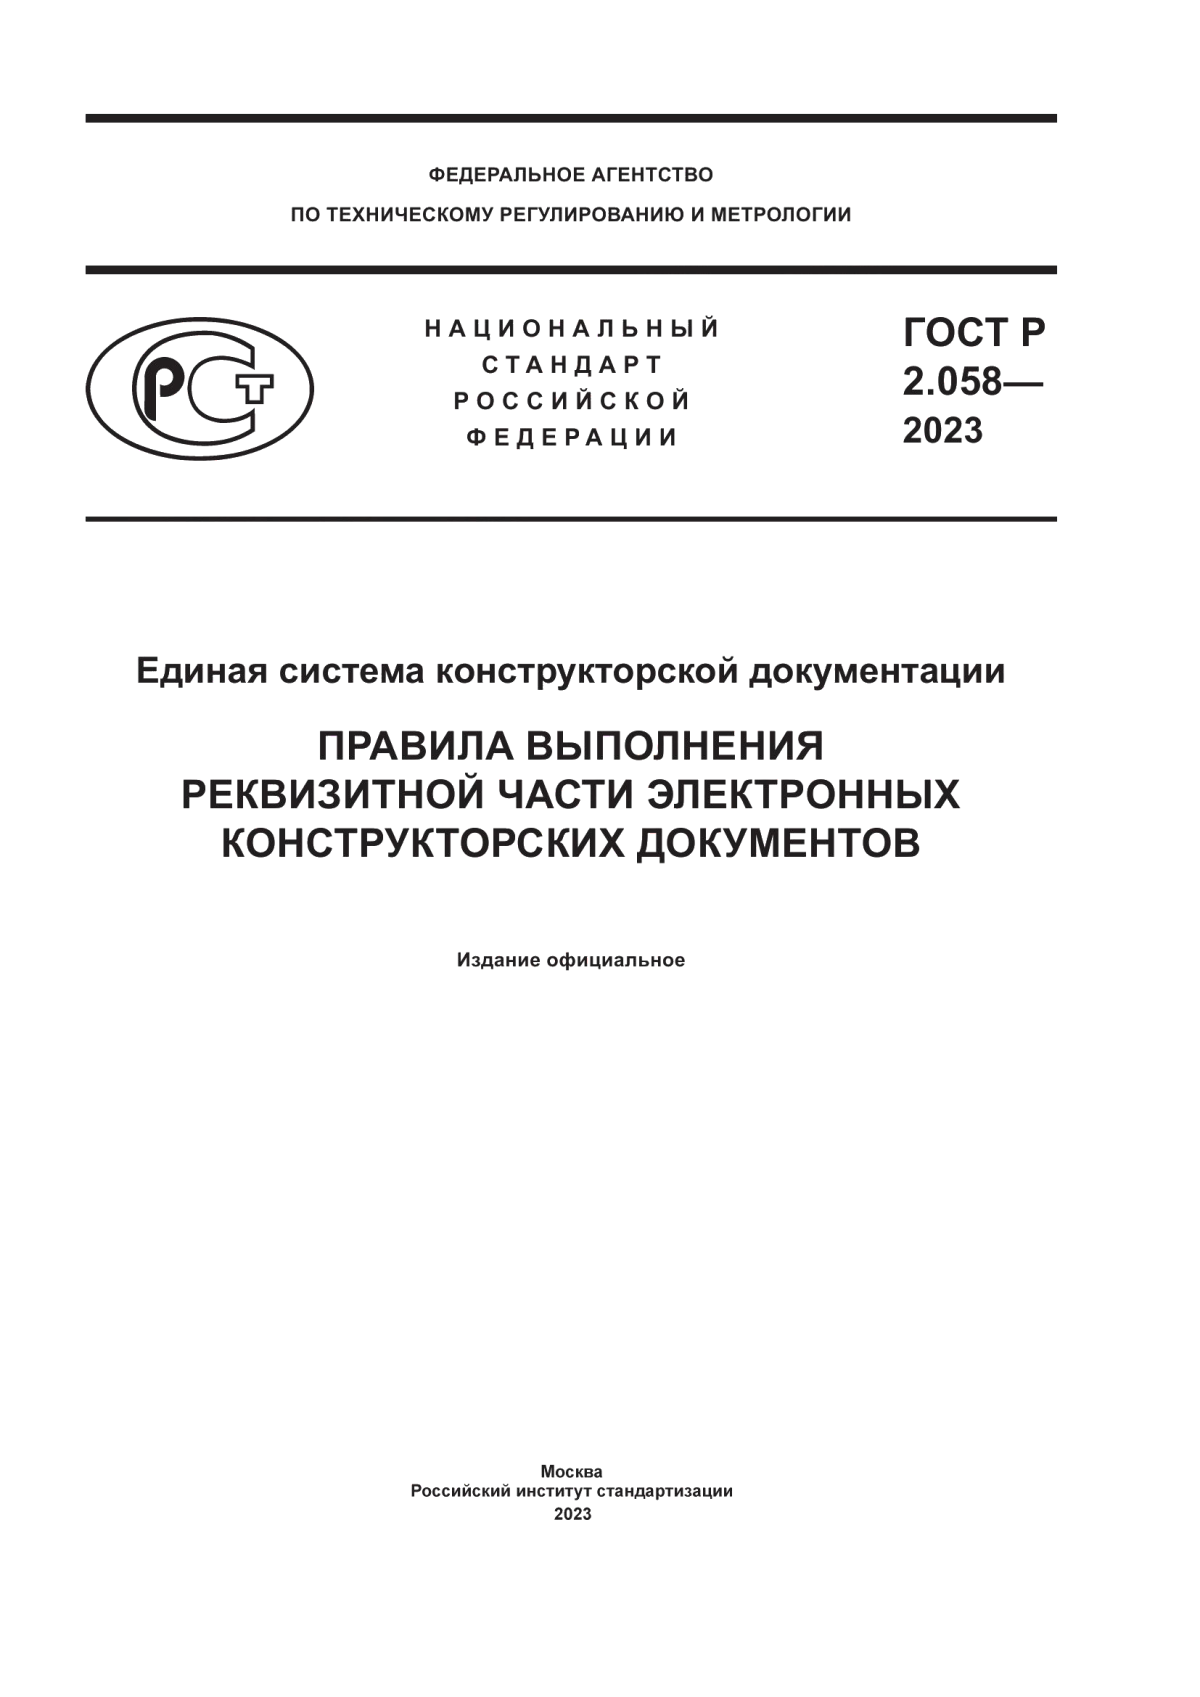 ГОСТ Р 2.058-2023 Единая система конструкторской документации. Правила выполнения реквизитной части электронных конструкторских документов